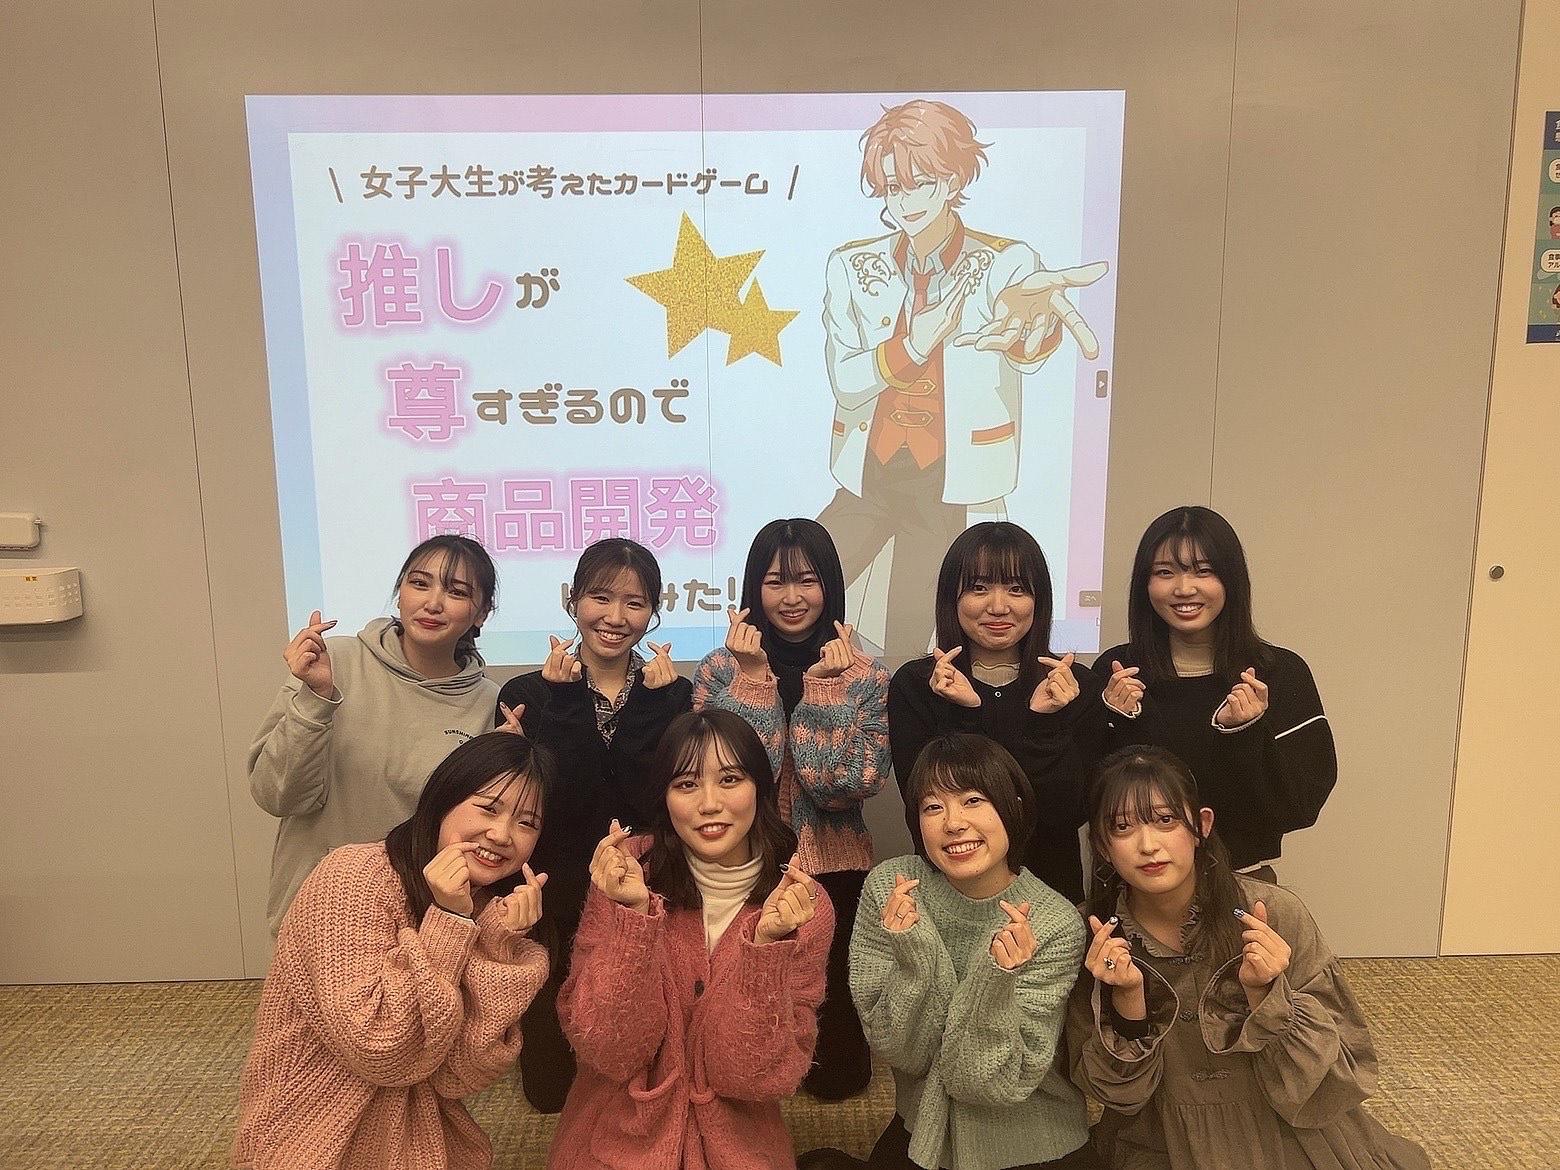 マーケティングを学べるカードゲームを武庫川女子大学の経営学科と情報メディア学科の学生が制作し、クラウドファンディングを実施中です。